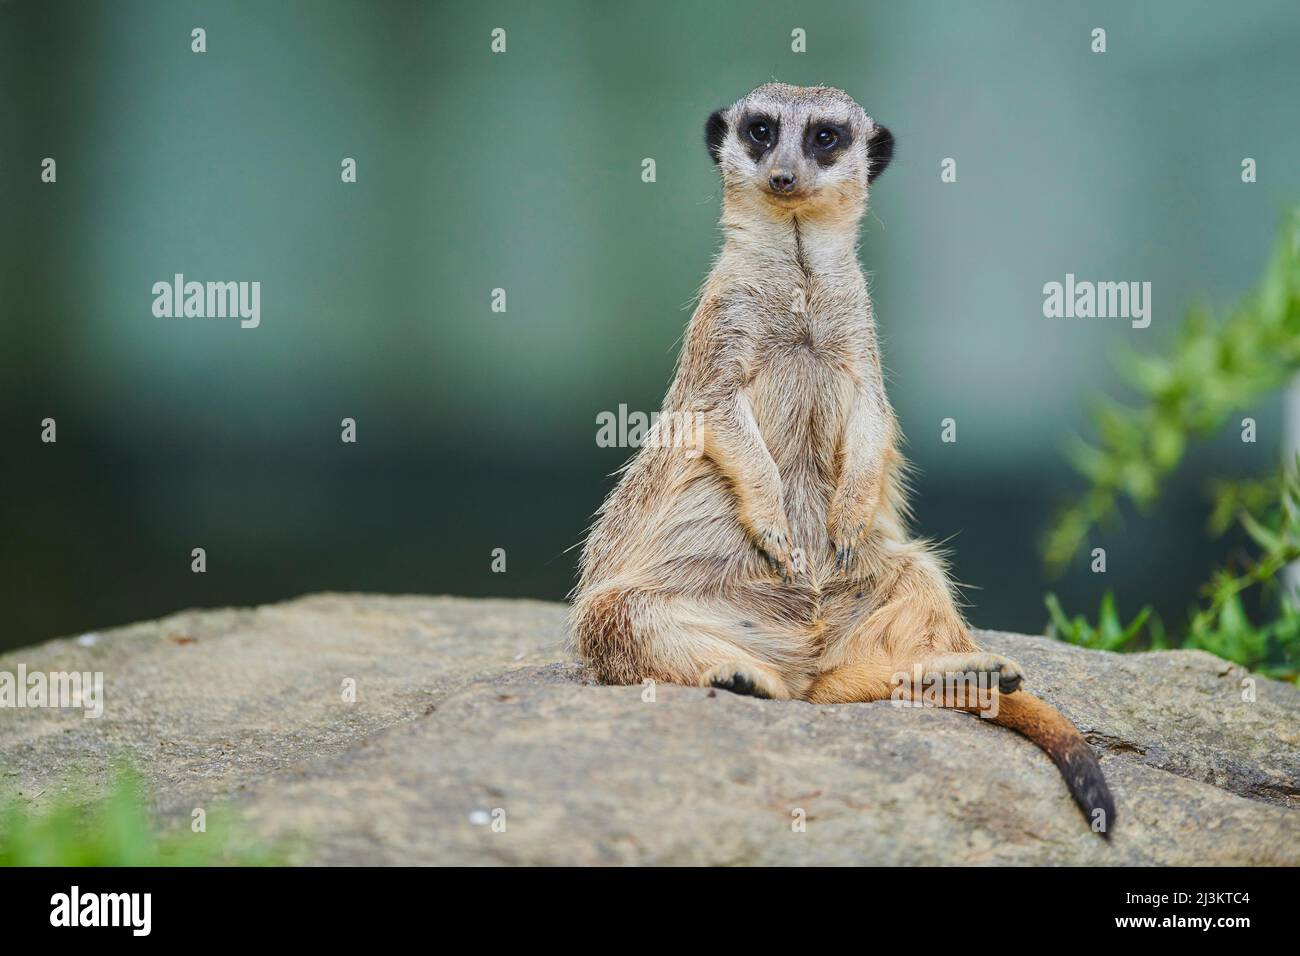 Porträt eines Erdmännchen oder surikats (Suricata suricatta) auf einem Felsen sitzend und in Gefangenschaft auf die Kamera schauend; Bayern, Deutschland Stockfoto